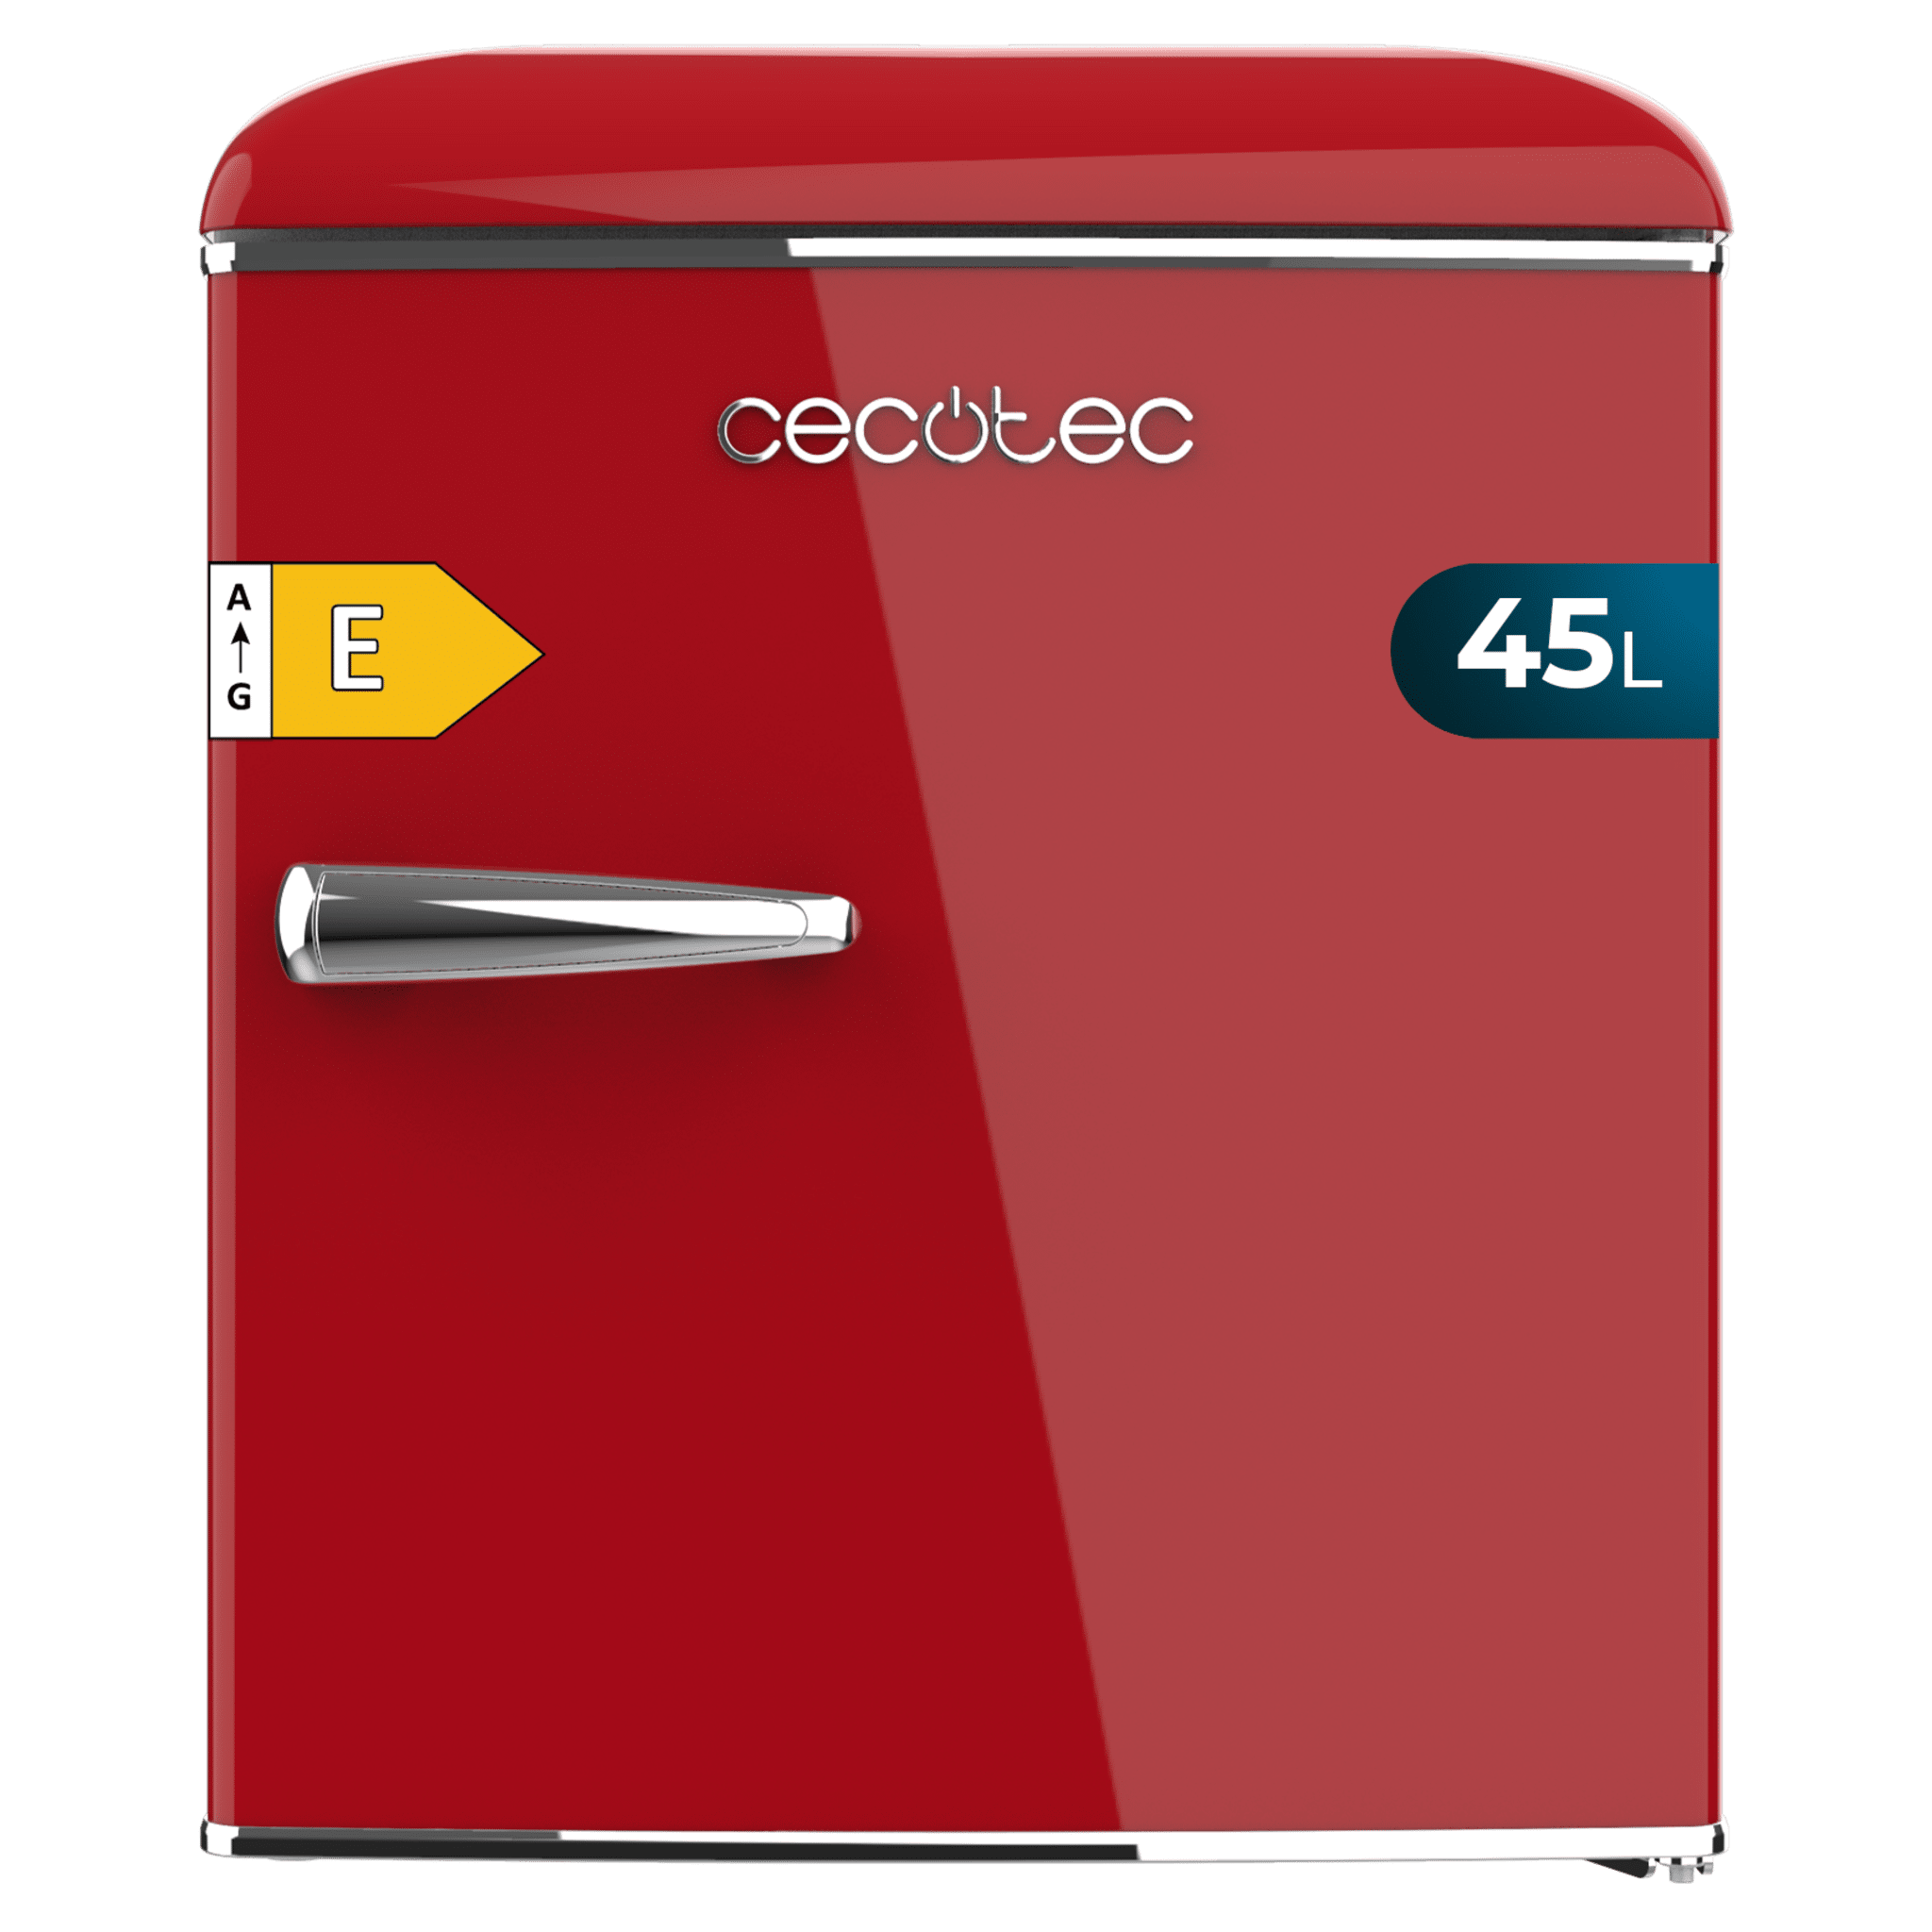 Bolero CoolMarket TT Origin 45 Red E Mini frigorífico retro sobremesa rojo de 55cm de alto y 44,7cm de ancho con capacidad de 45L, clase energética E, Icebox y tirador cromado.